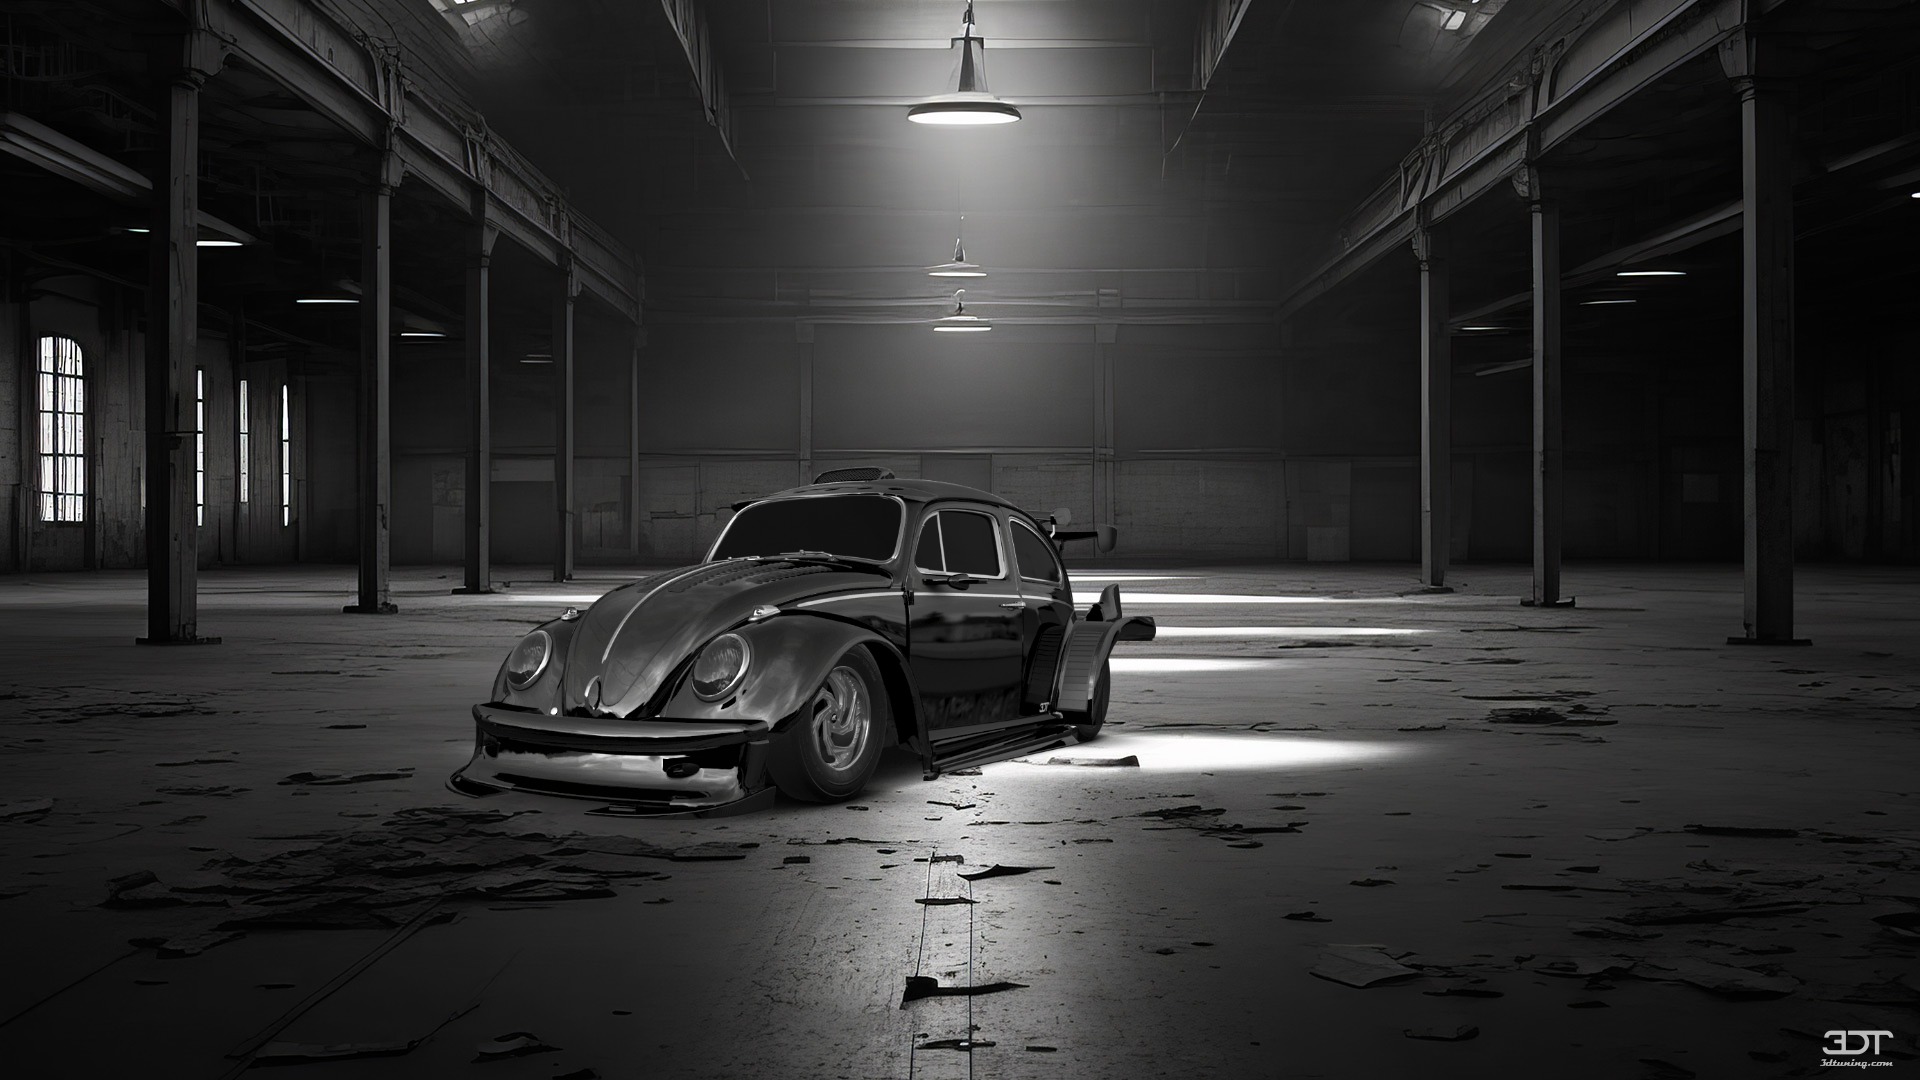 Volkswagen Beetle Saloon 1964 tuning